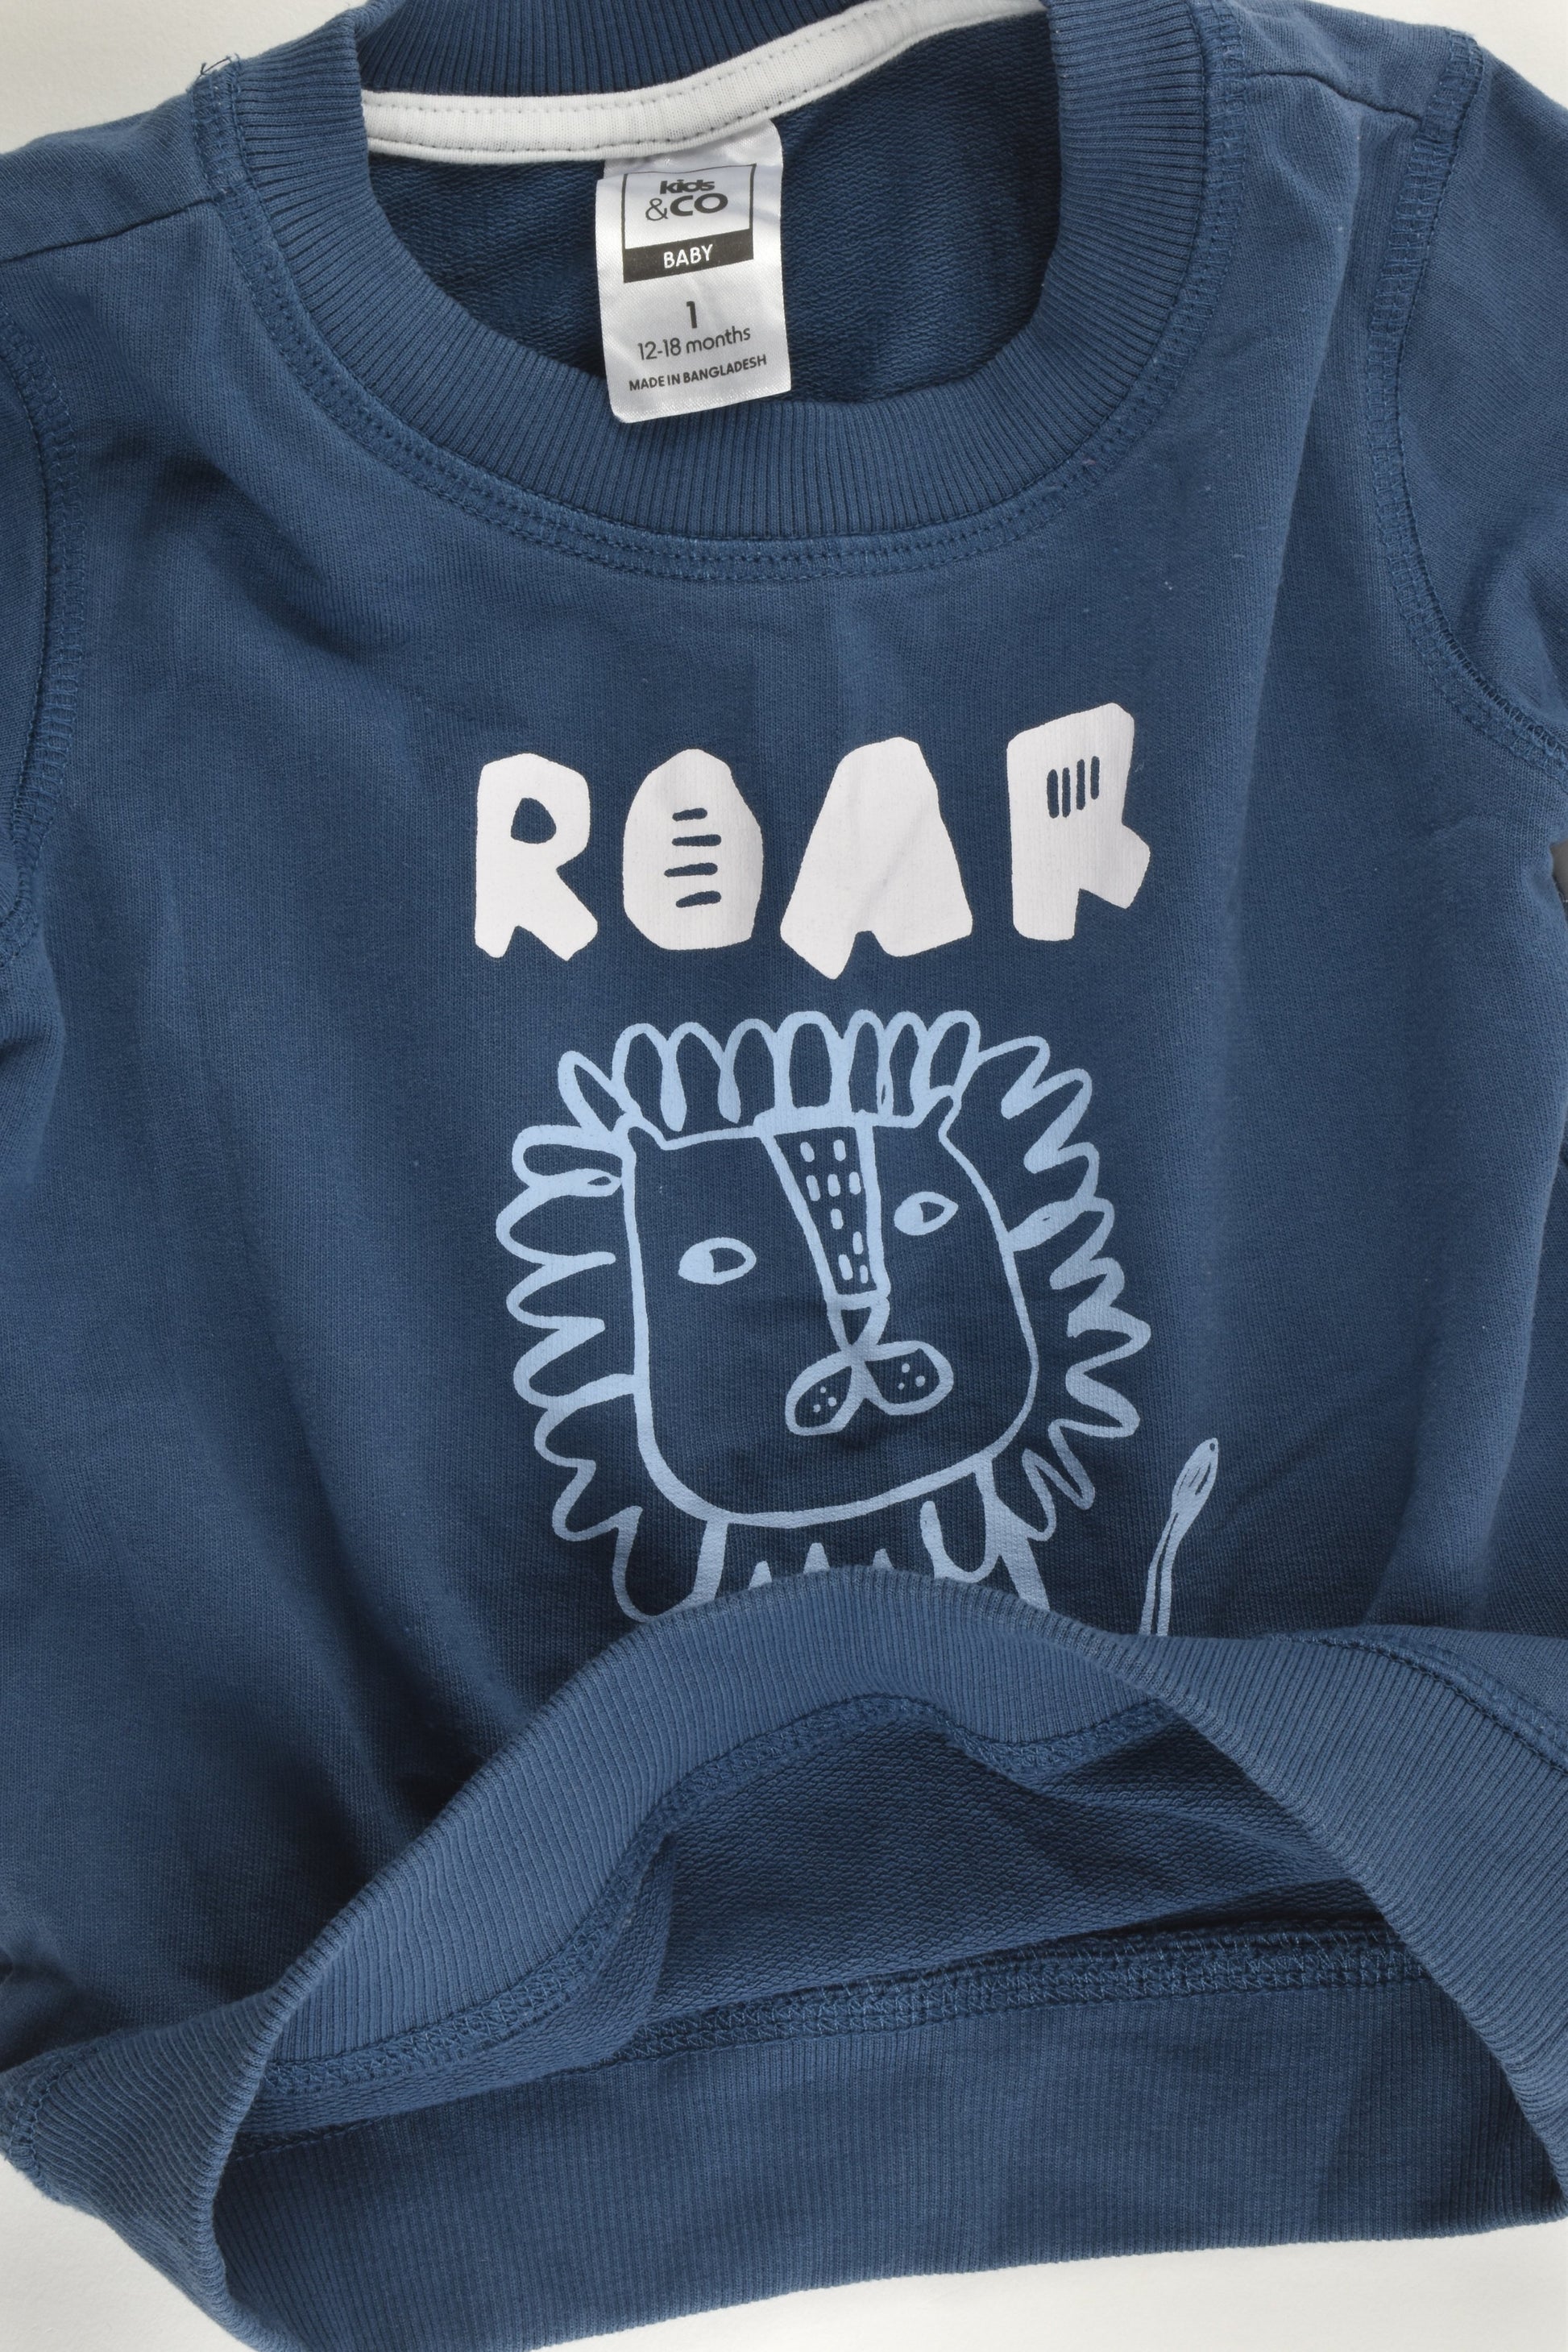 Kids & Co Size 1 (12-18 months) Lion 'Roar' Sweater